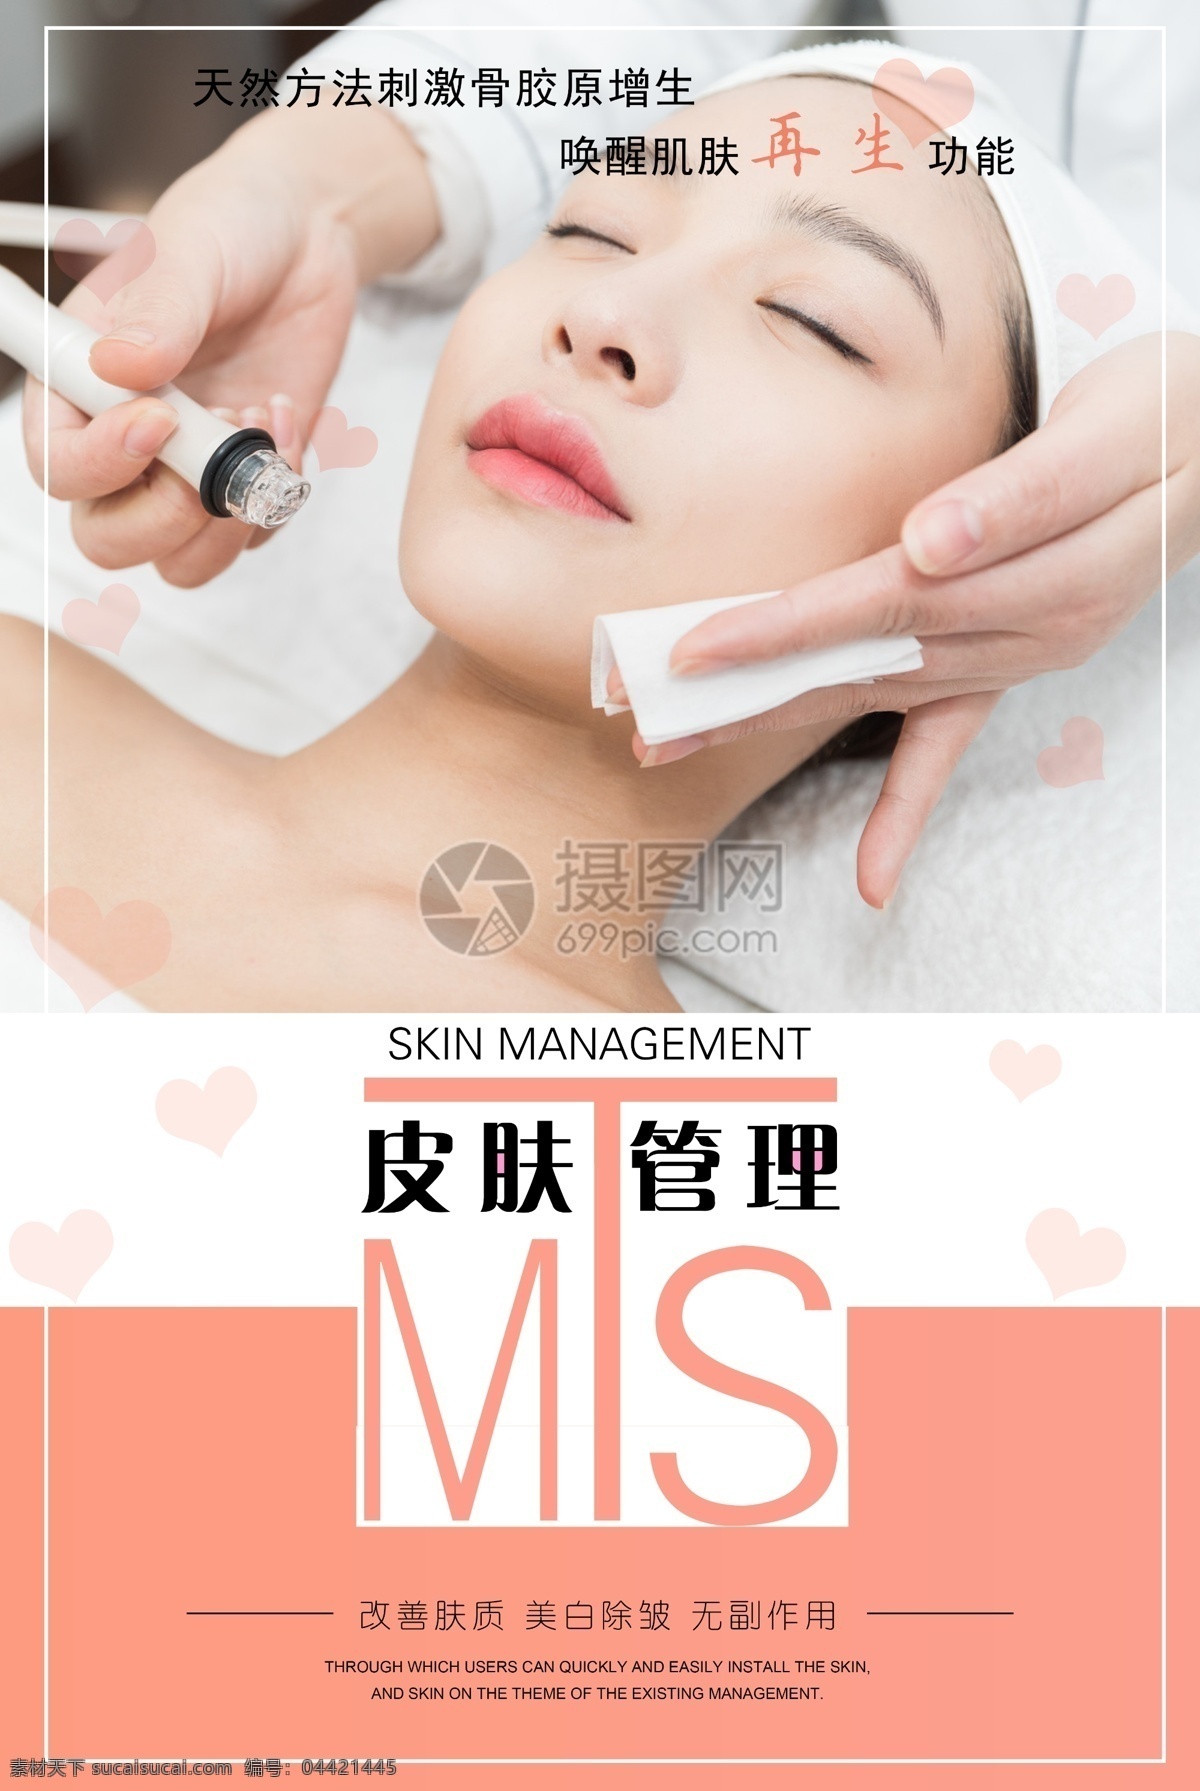 mts 皮肤 管理 美容 海报 护肤 健康 保养 美容院 女性 女人 美女 脸部保养